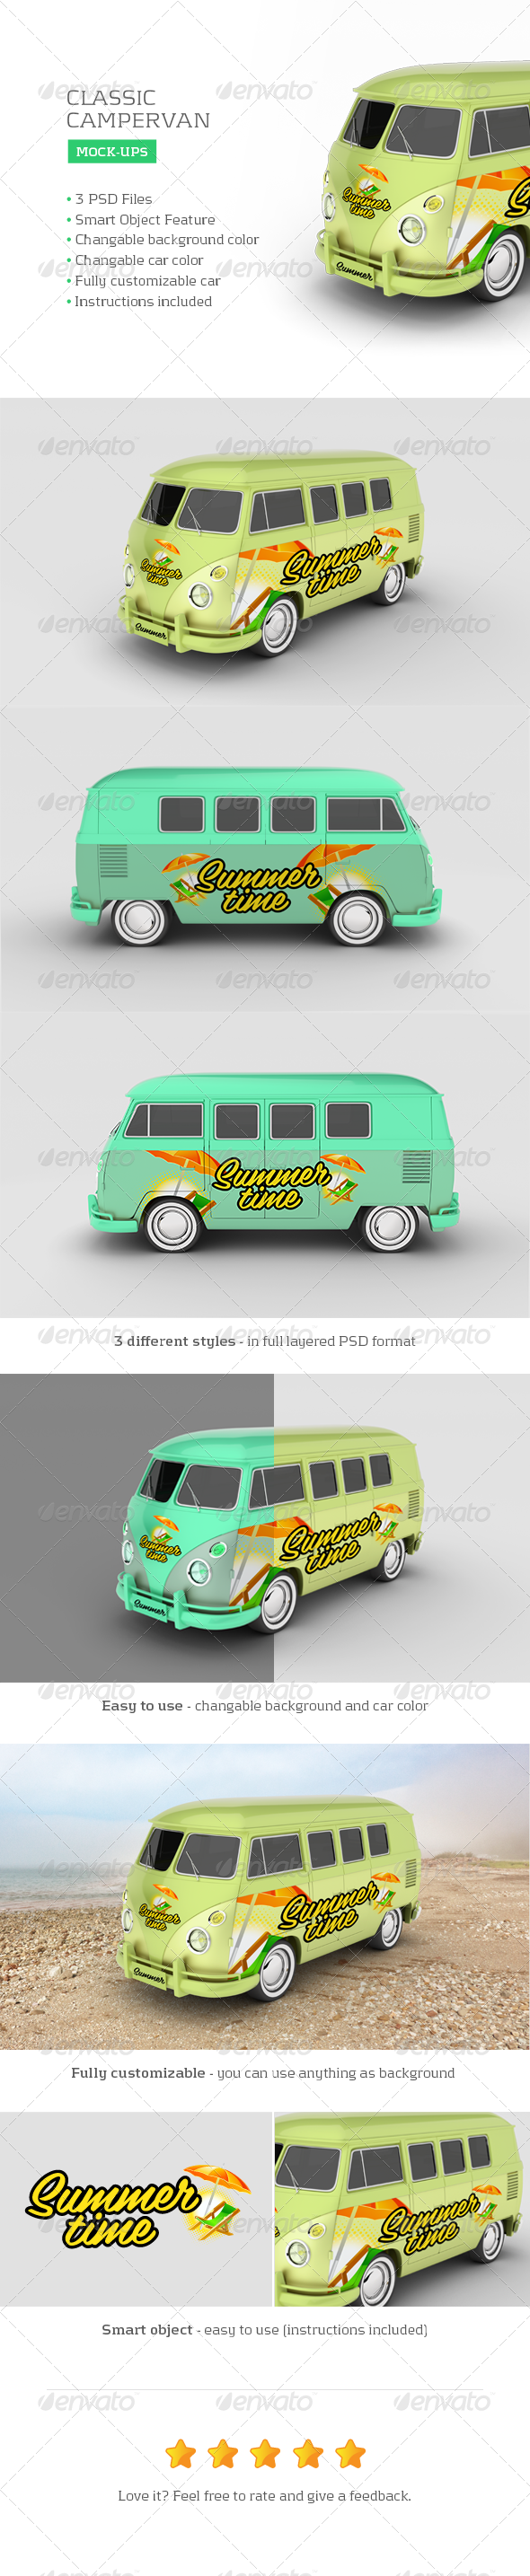 Classic Campervan Car Mock-Up